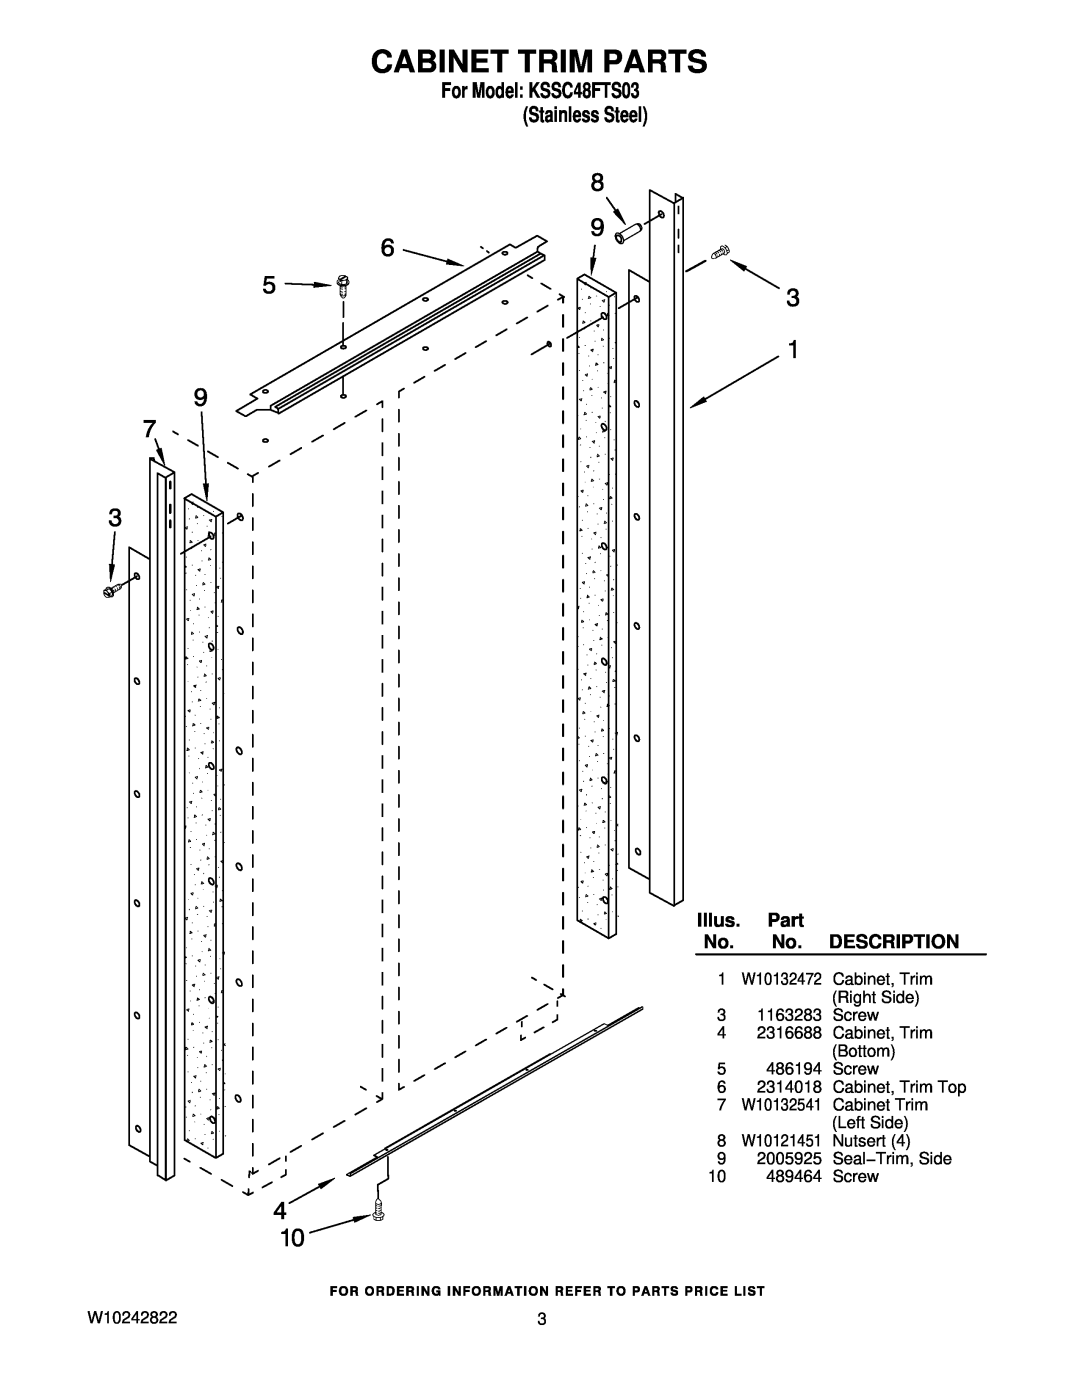 KitchenAid manual Cabinet Trim Parts, For Model KSSC48FTS03 Stainless Steel, Illus, Description 